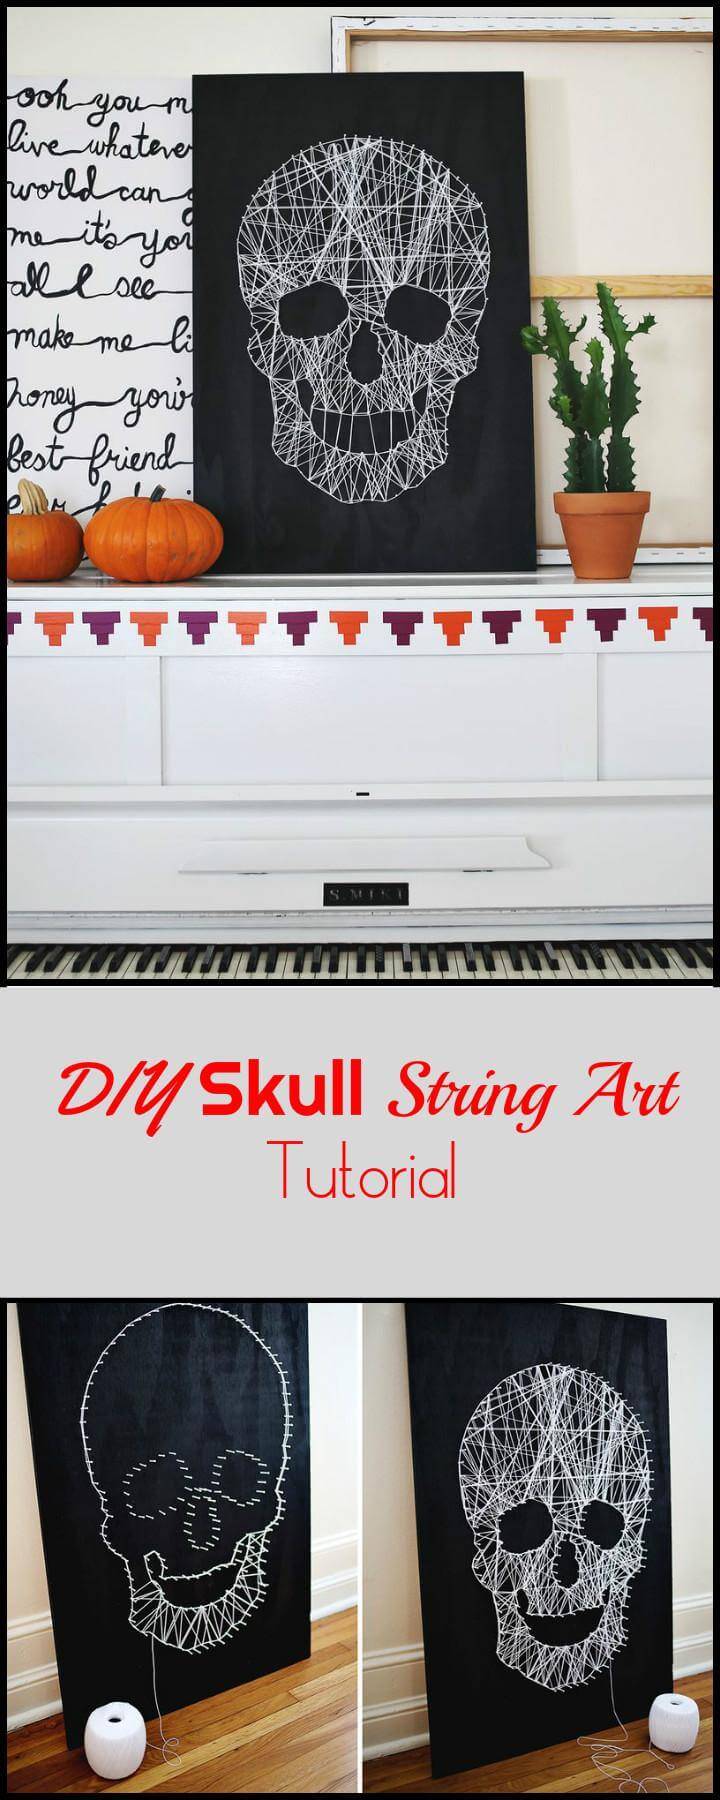 DIY Skull String Art Tutorial